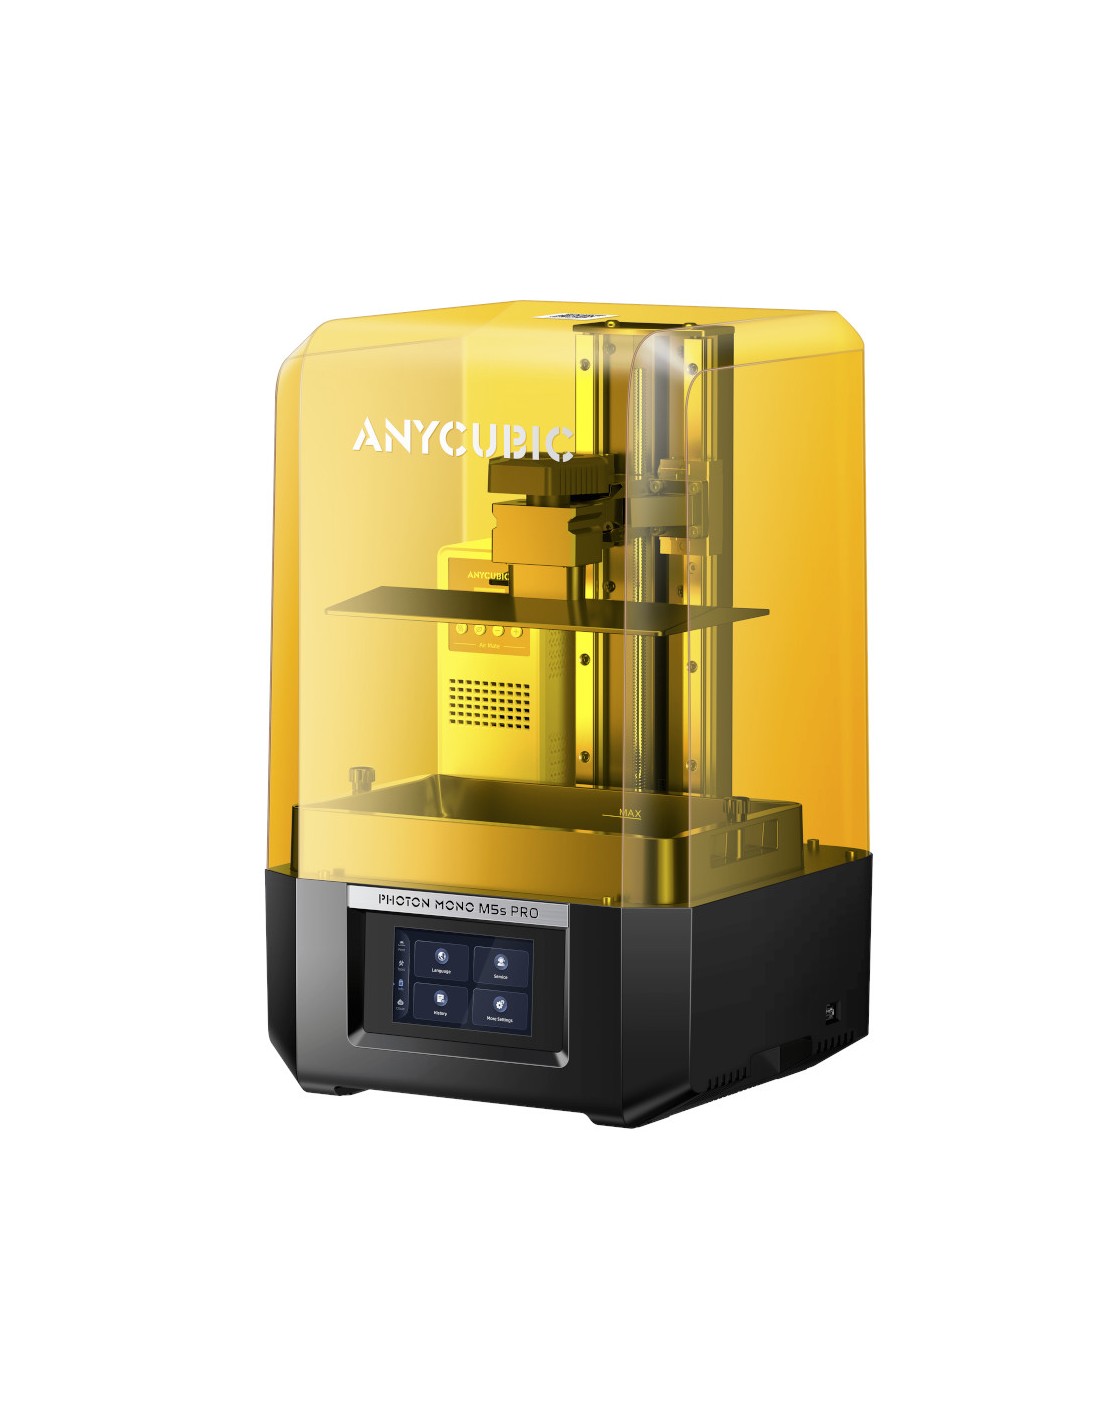 Anycubic Photon Mono M5s Pro - imprimante 3D à résine